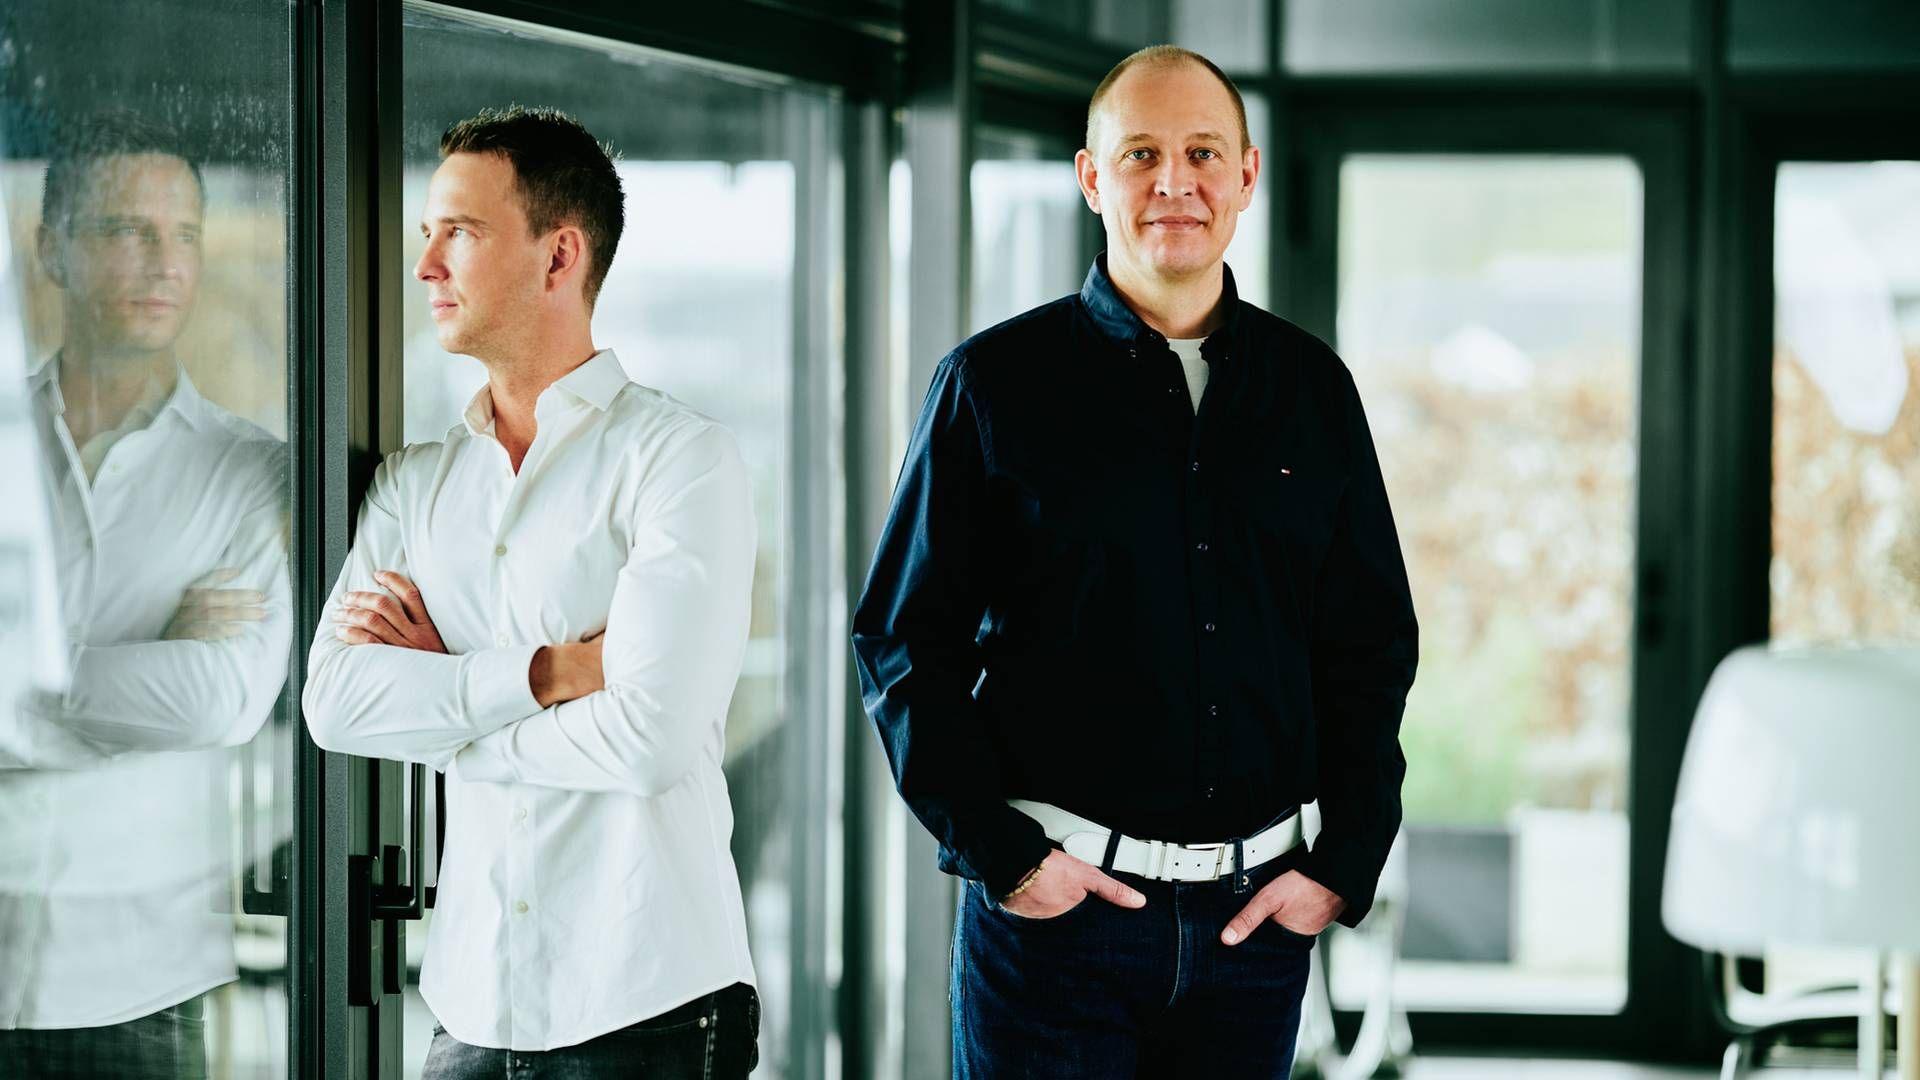 Brødrene Anders (tv.) og Martin Bjergegaard, der står bag investeringsselskabet Bjergegaard & Co. | Foto: Bjergegaard og Co. / PR